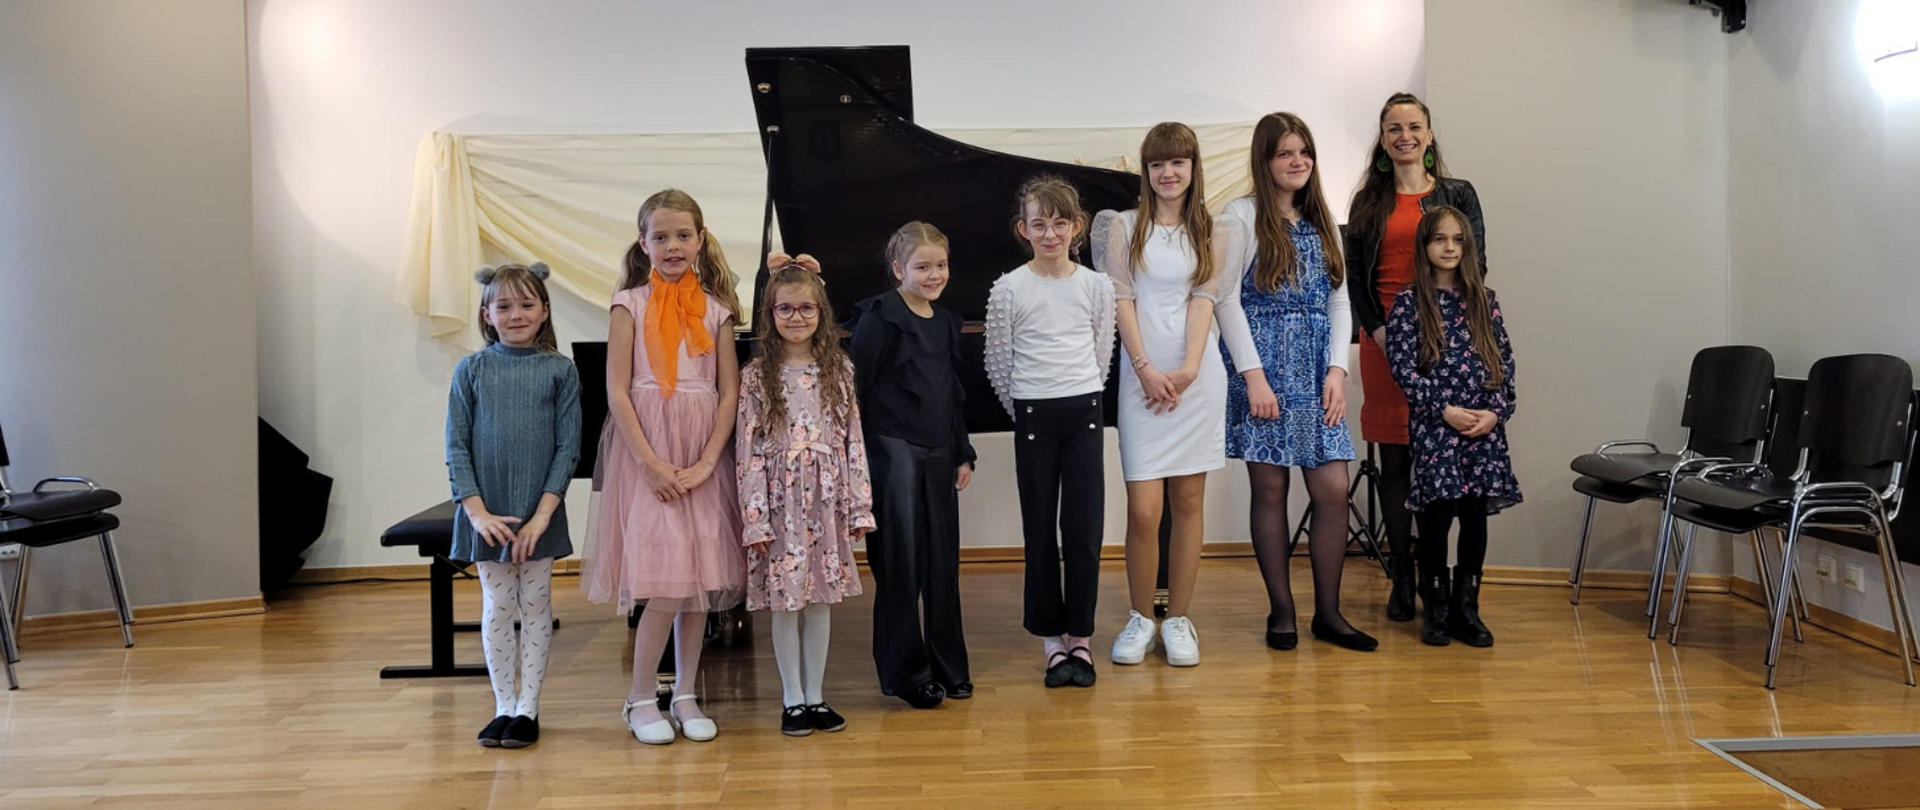 Na zdjęciu grupa uczniów- same dziewczyny wraz z nauczycielką- blondynką w czerwonej sukience i czarnej marynarce. W tle otwarty fortepian. Wszyscy stoją na scenie.